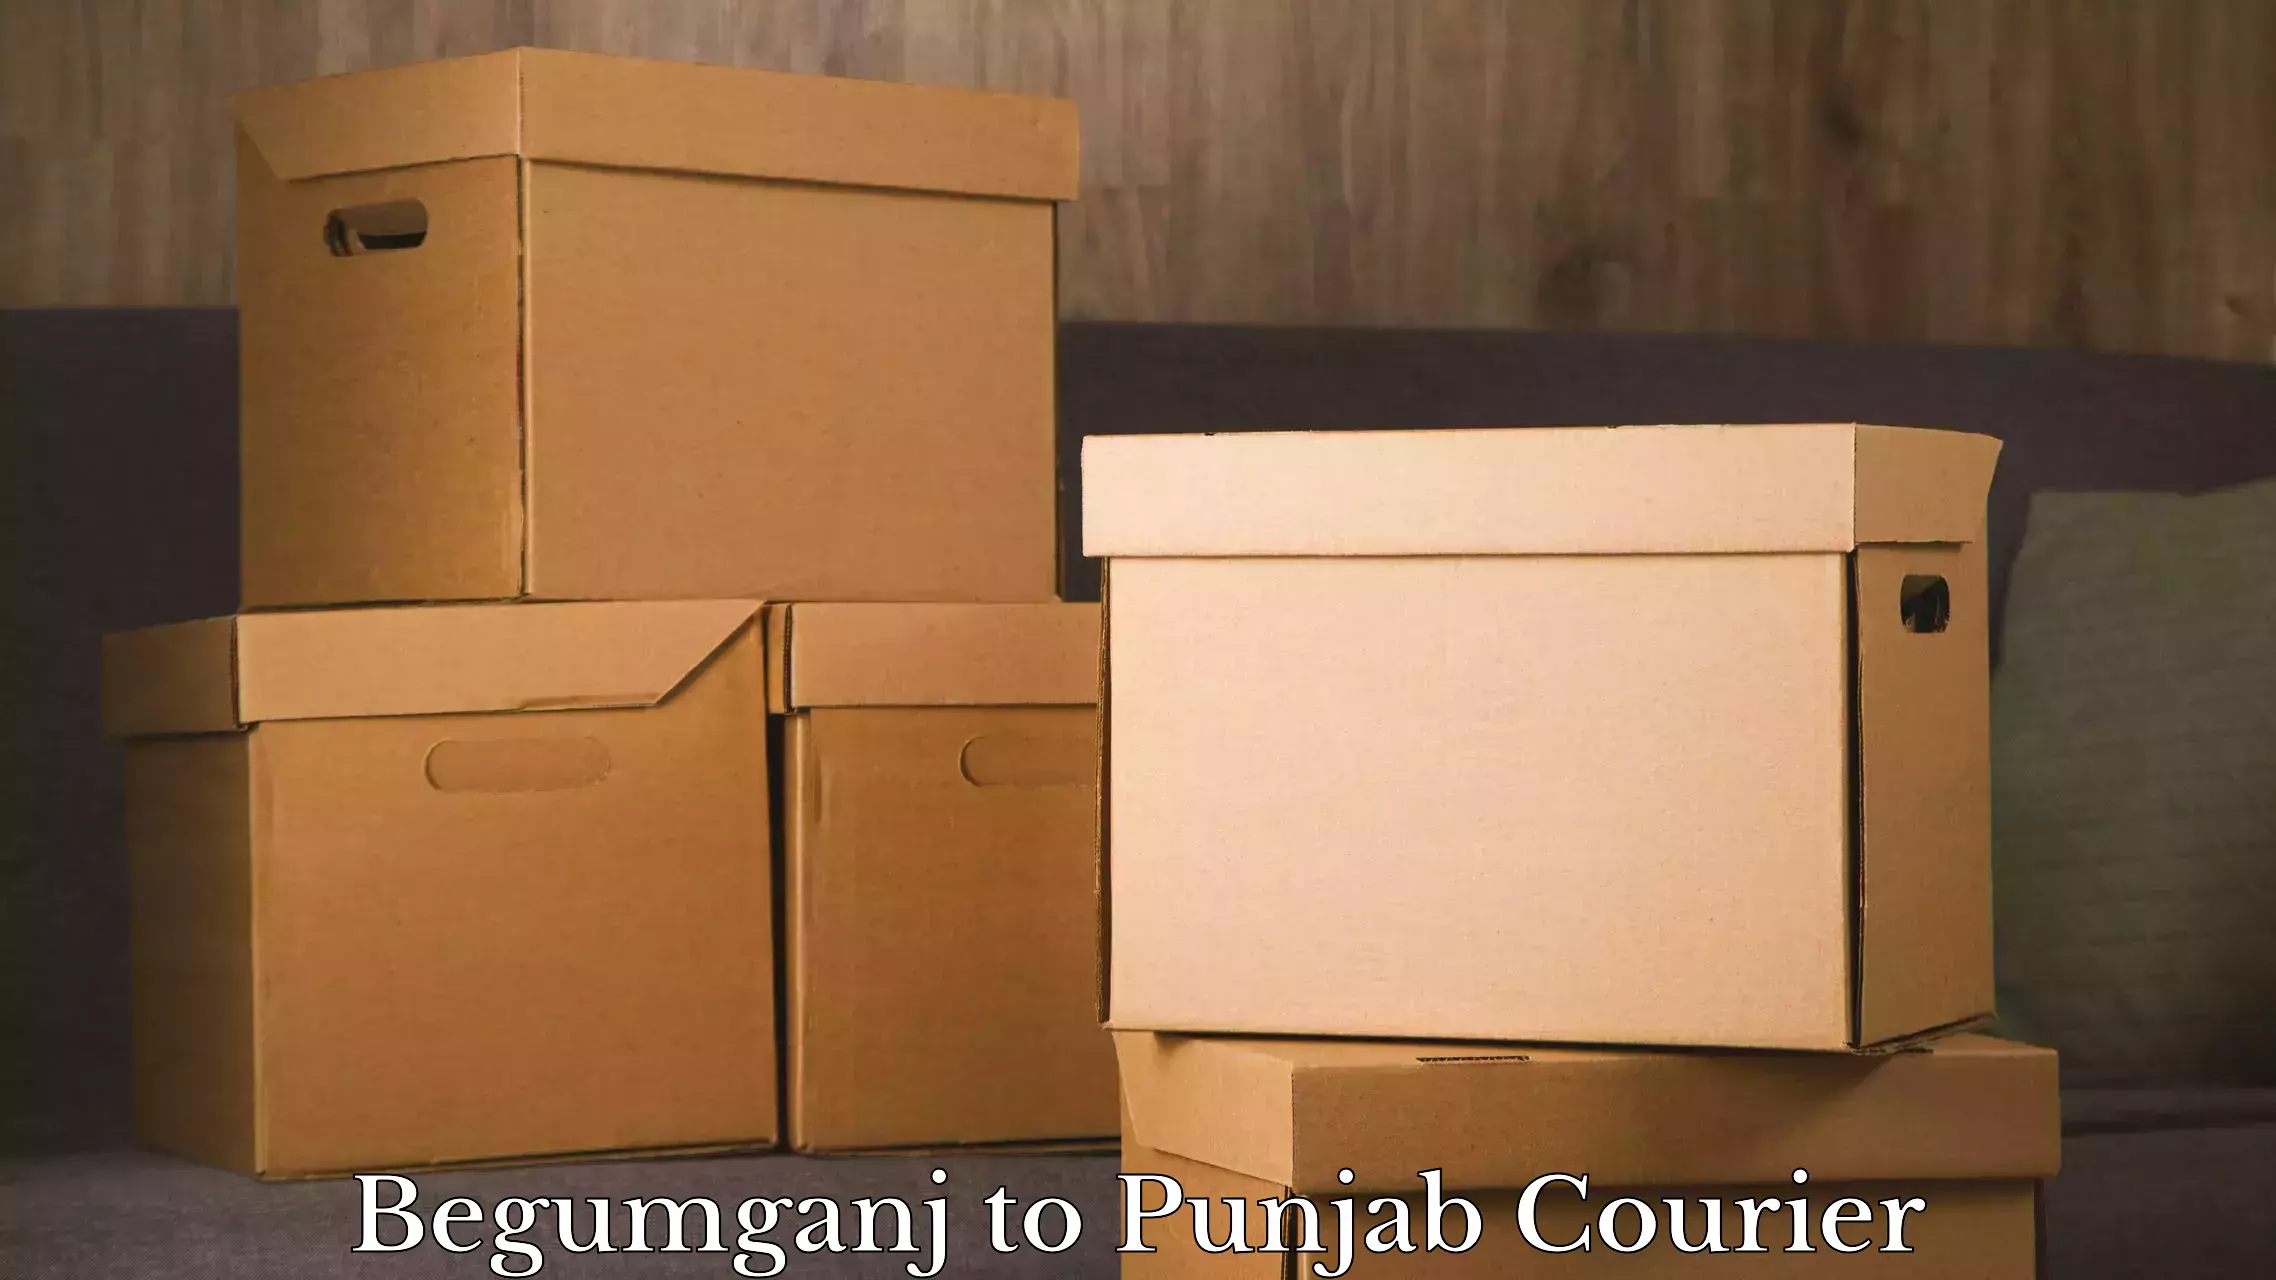 Luggage transport deals Begumganj to Central University of Punjab Bathinda